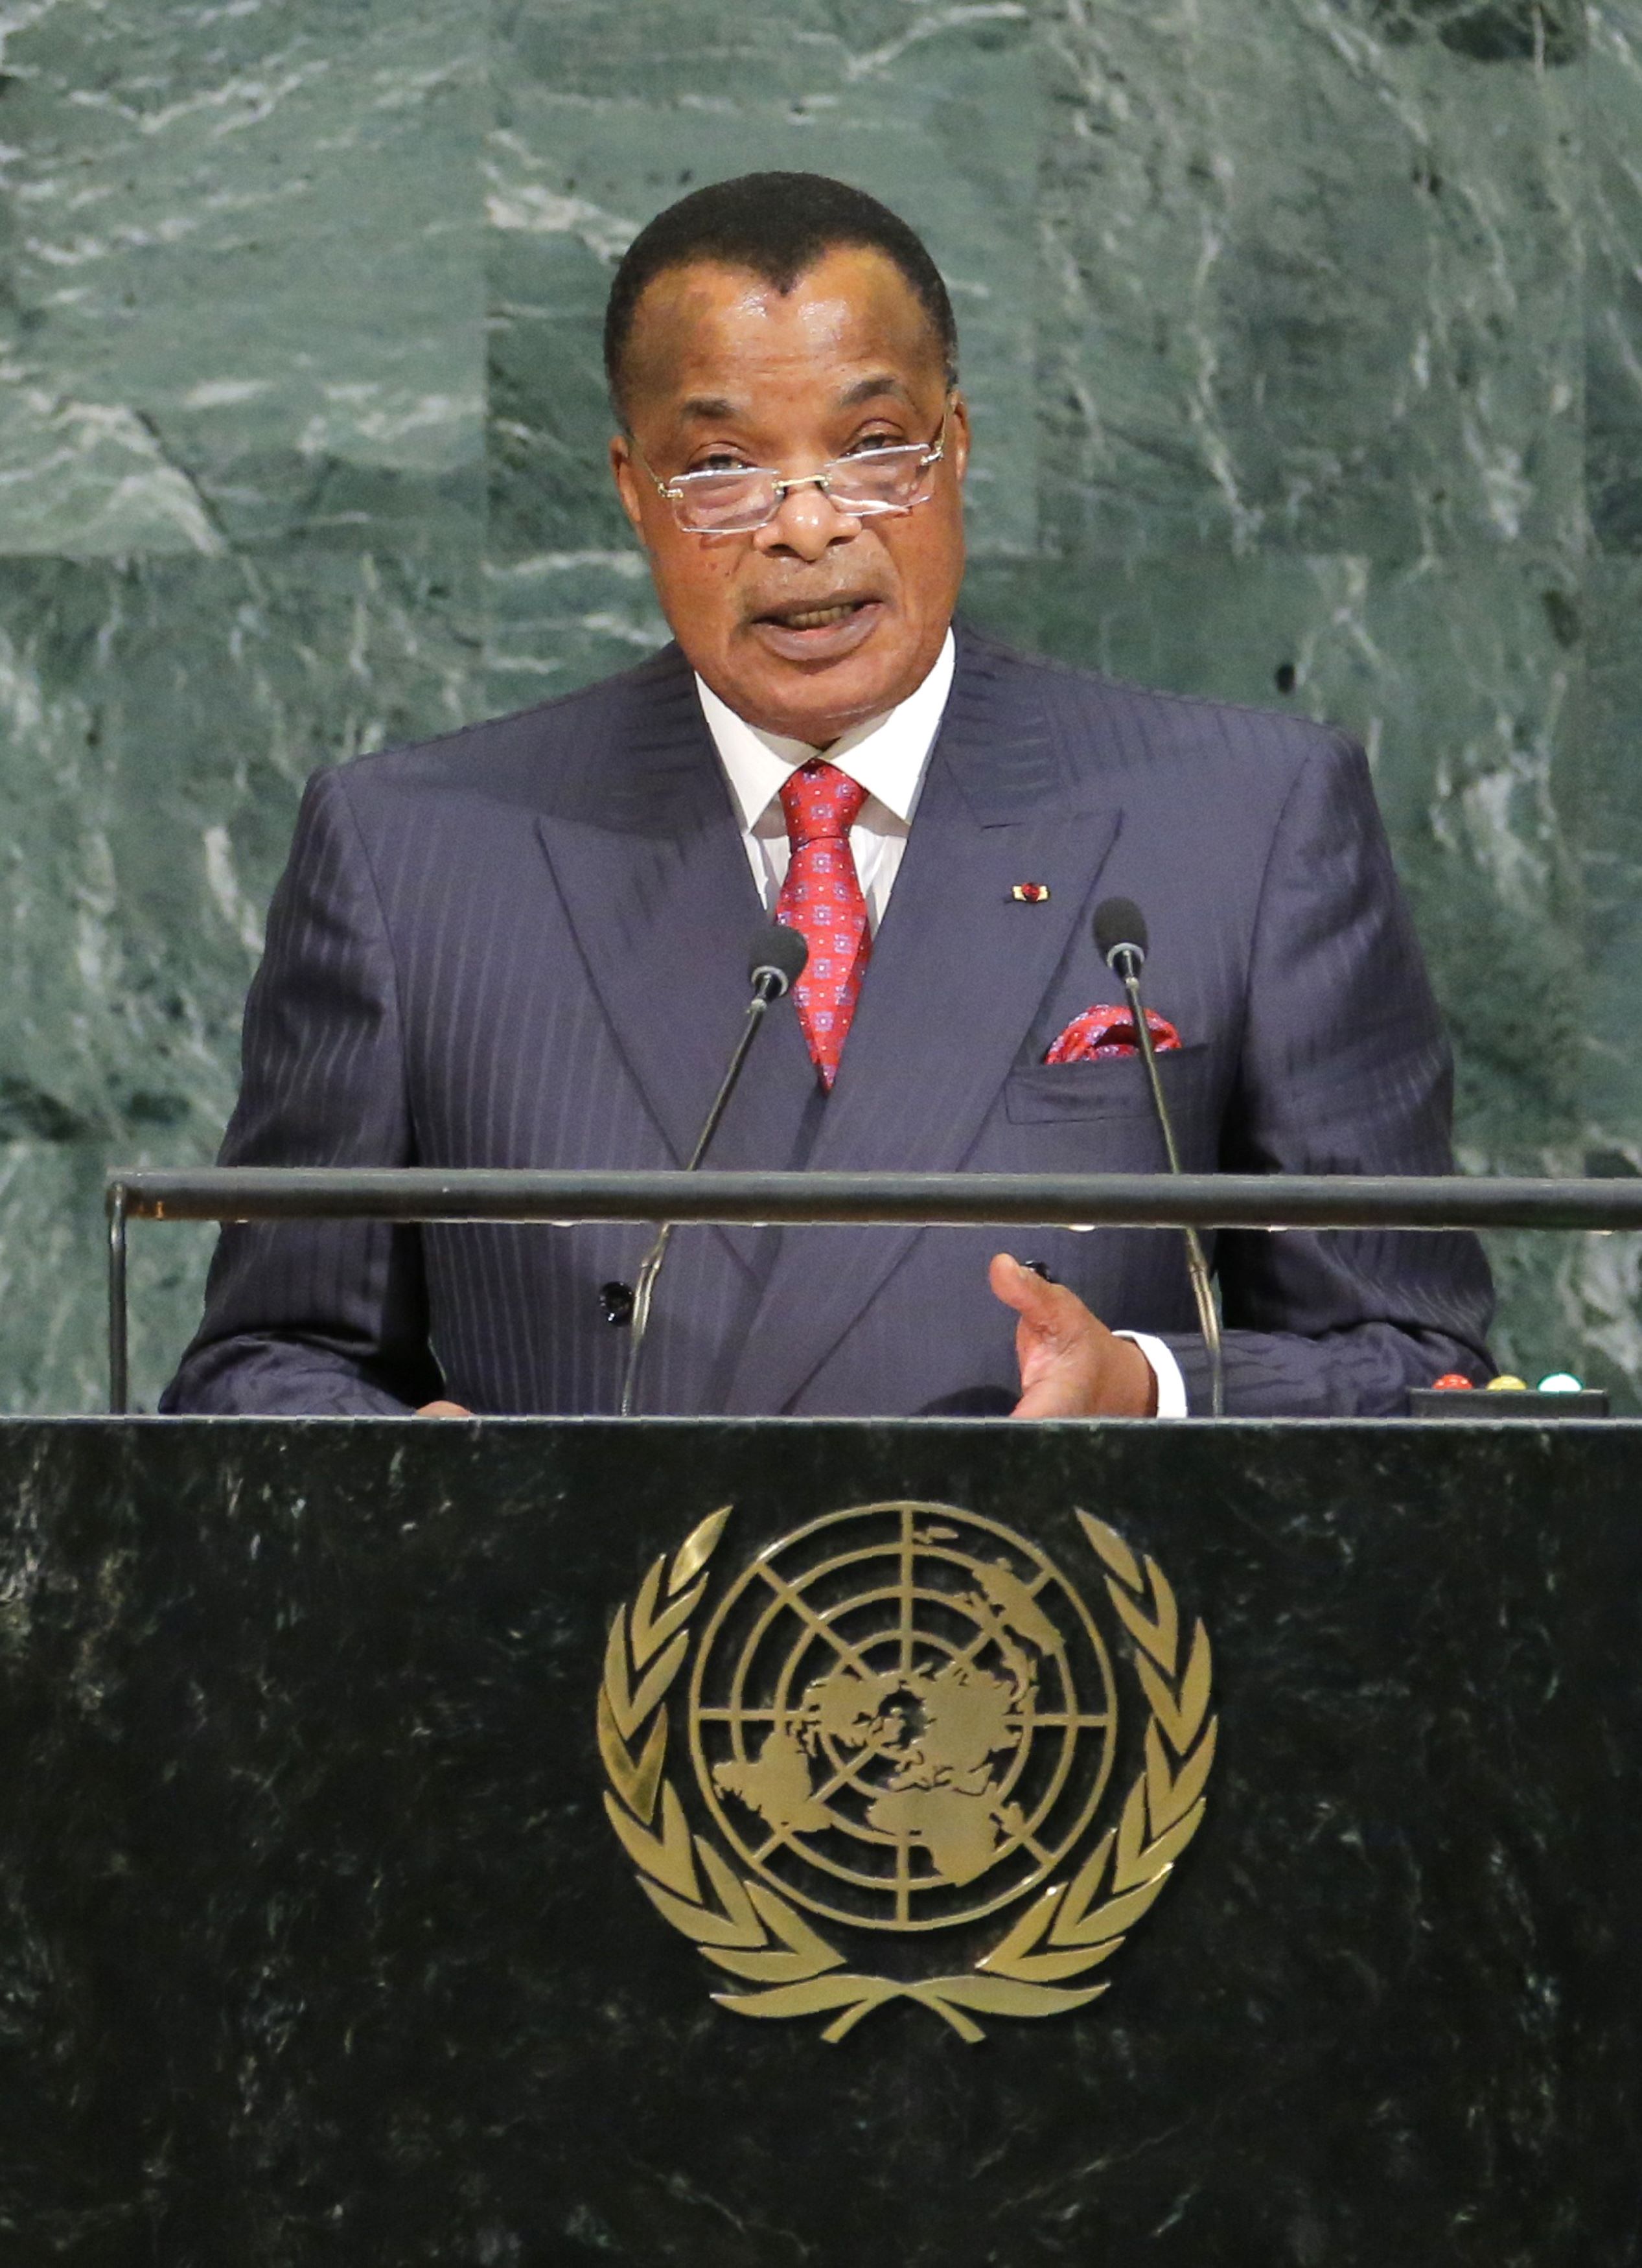 رئيس الكونغو نغويسو